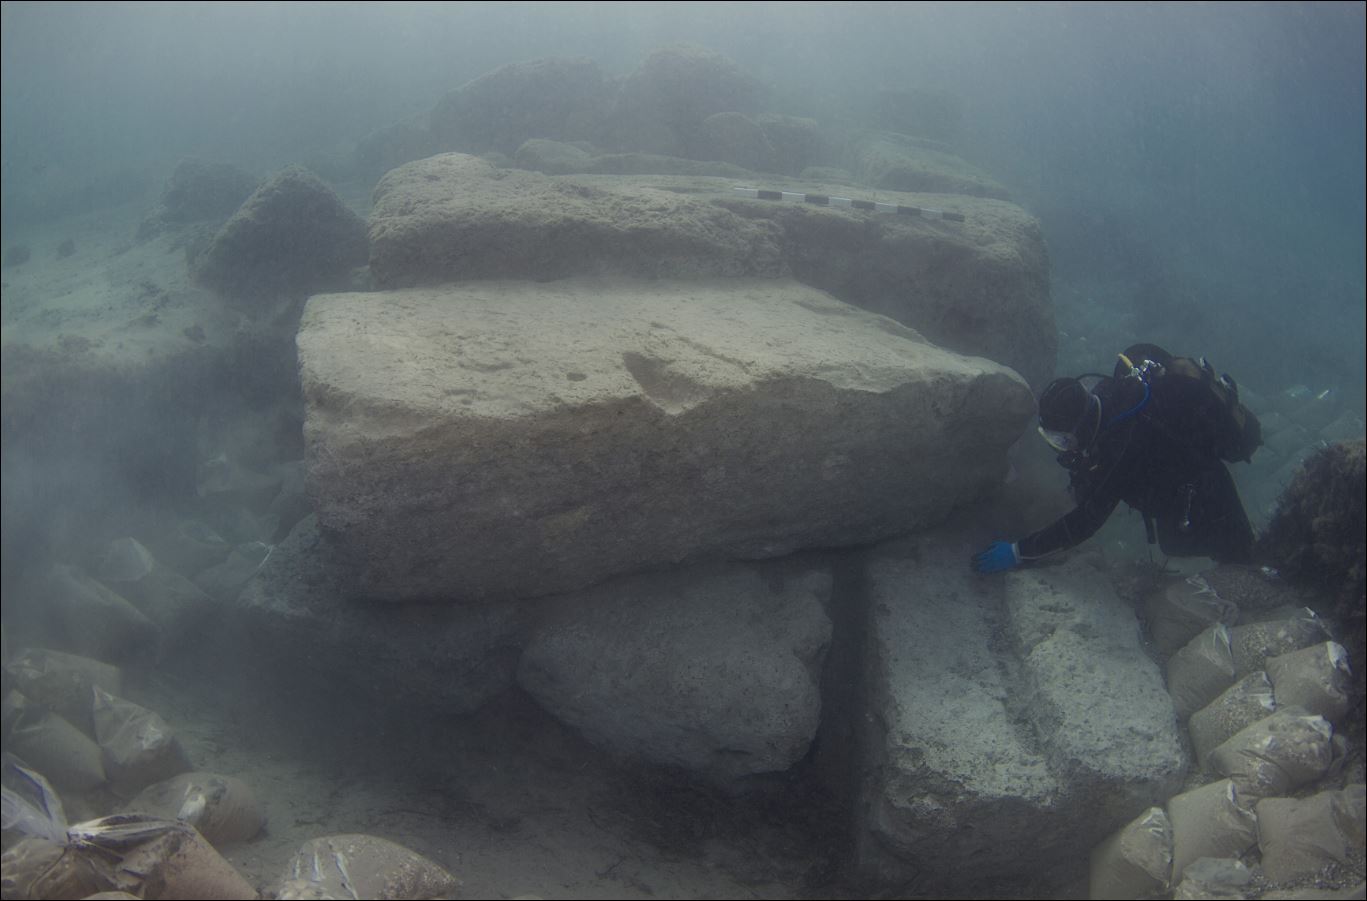 Σημαντικά ευρήματα στο αρχαίο λιμάνι του Λεχαίου – ΦΩΤΟ